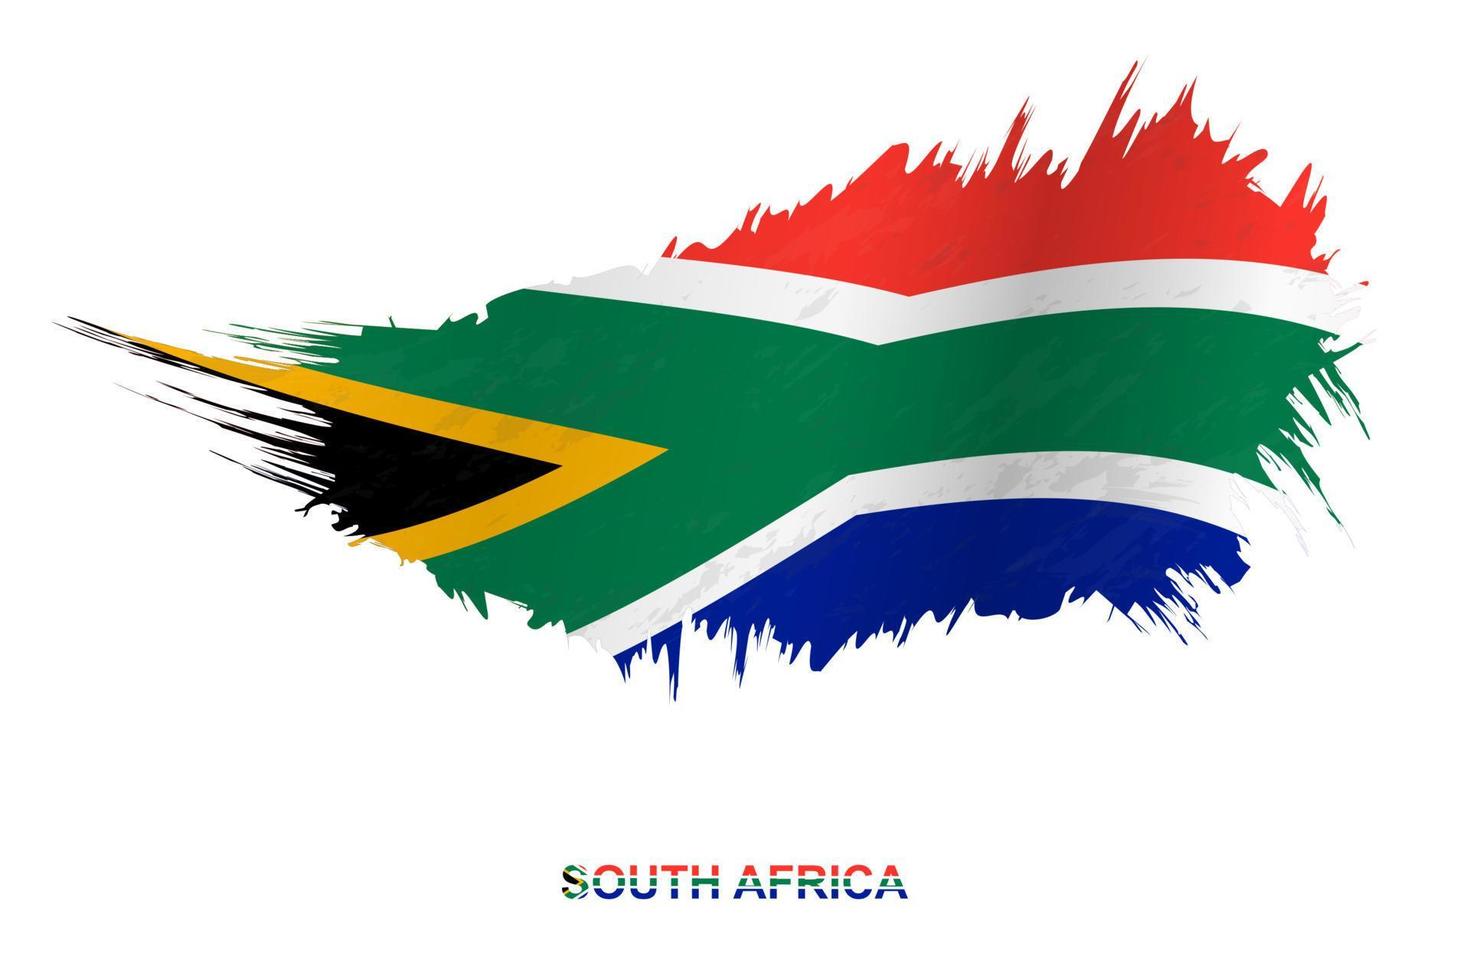 bandeira da áfrica do sul em estilo grunge com efeito acenando. vetor